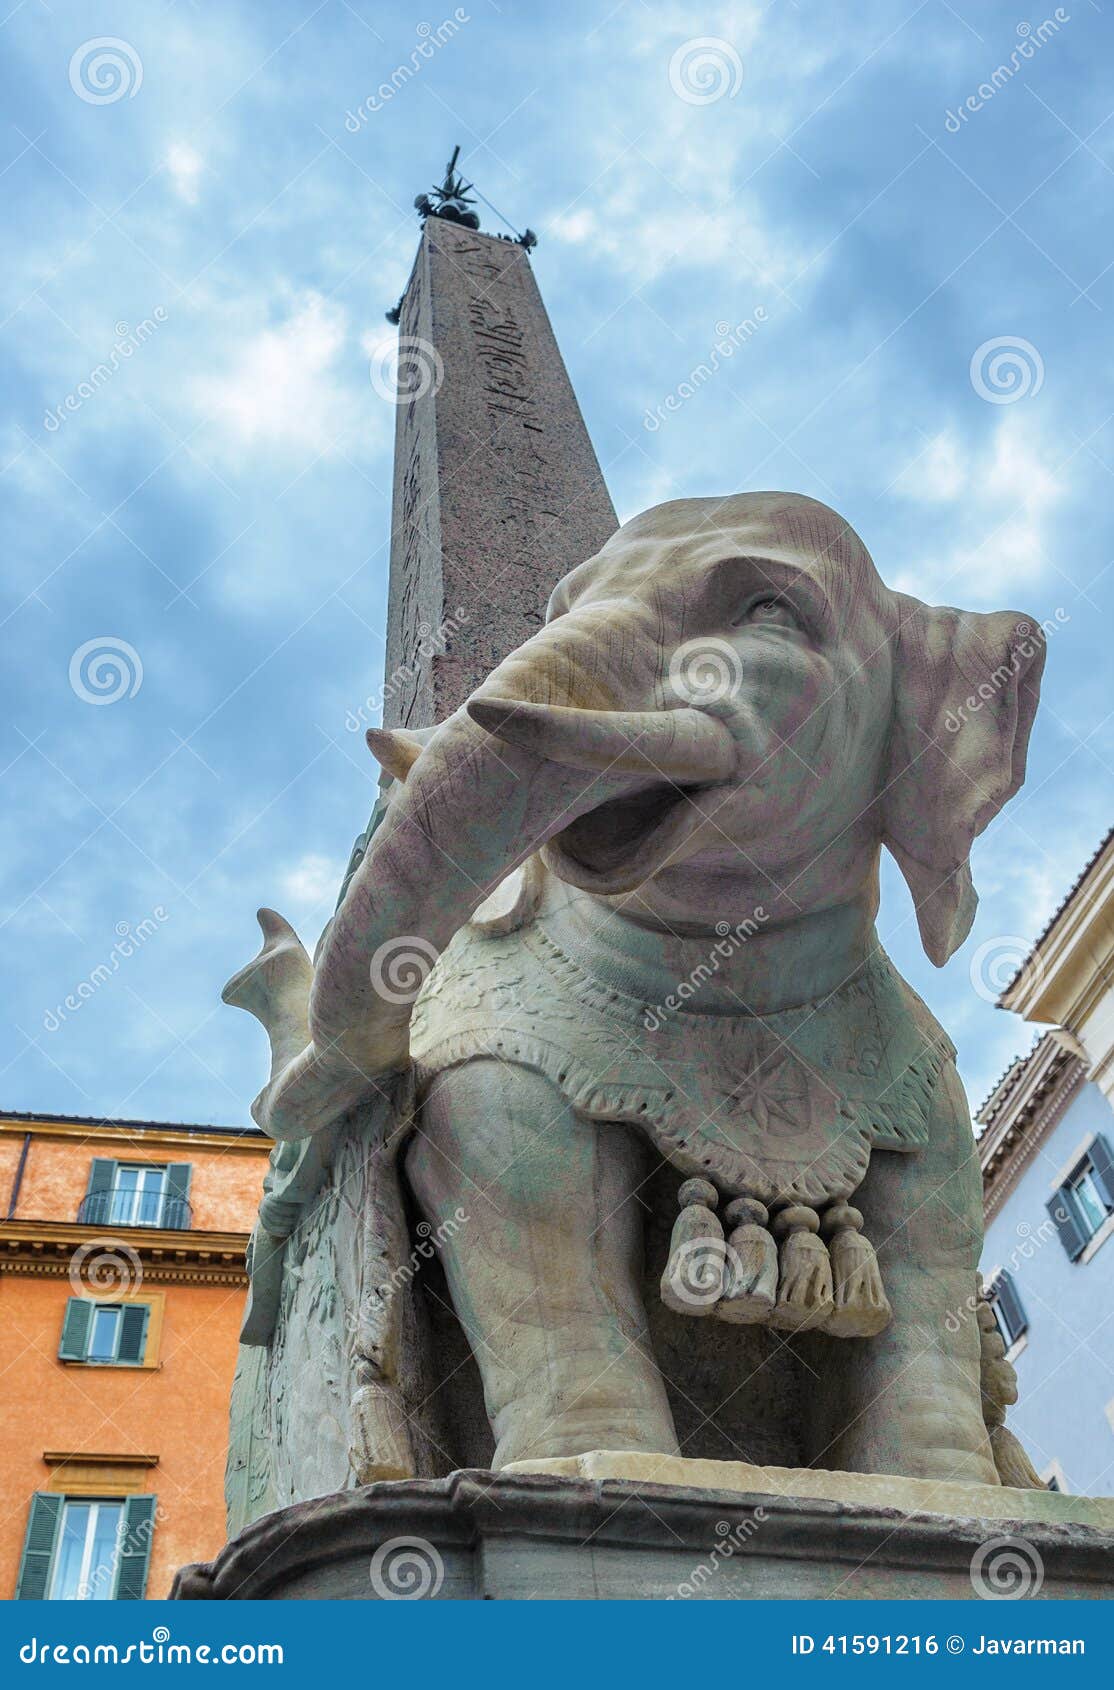 elephant and obelisk by bernini in piazza della minerva, rome, i